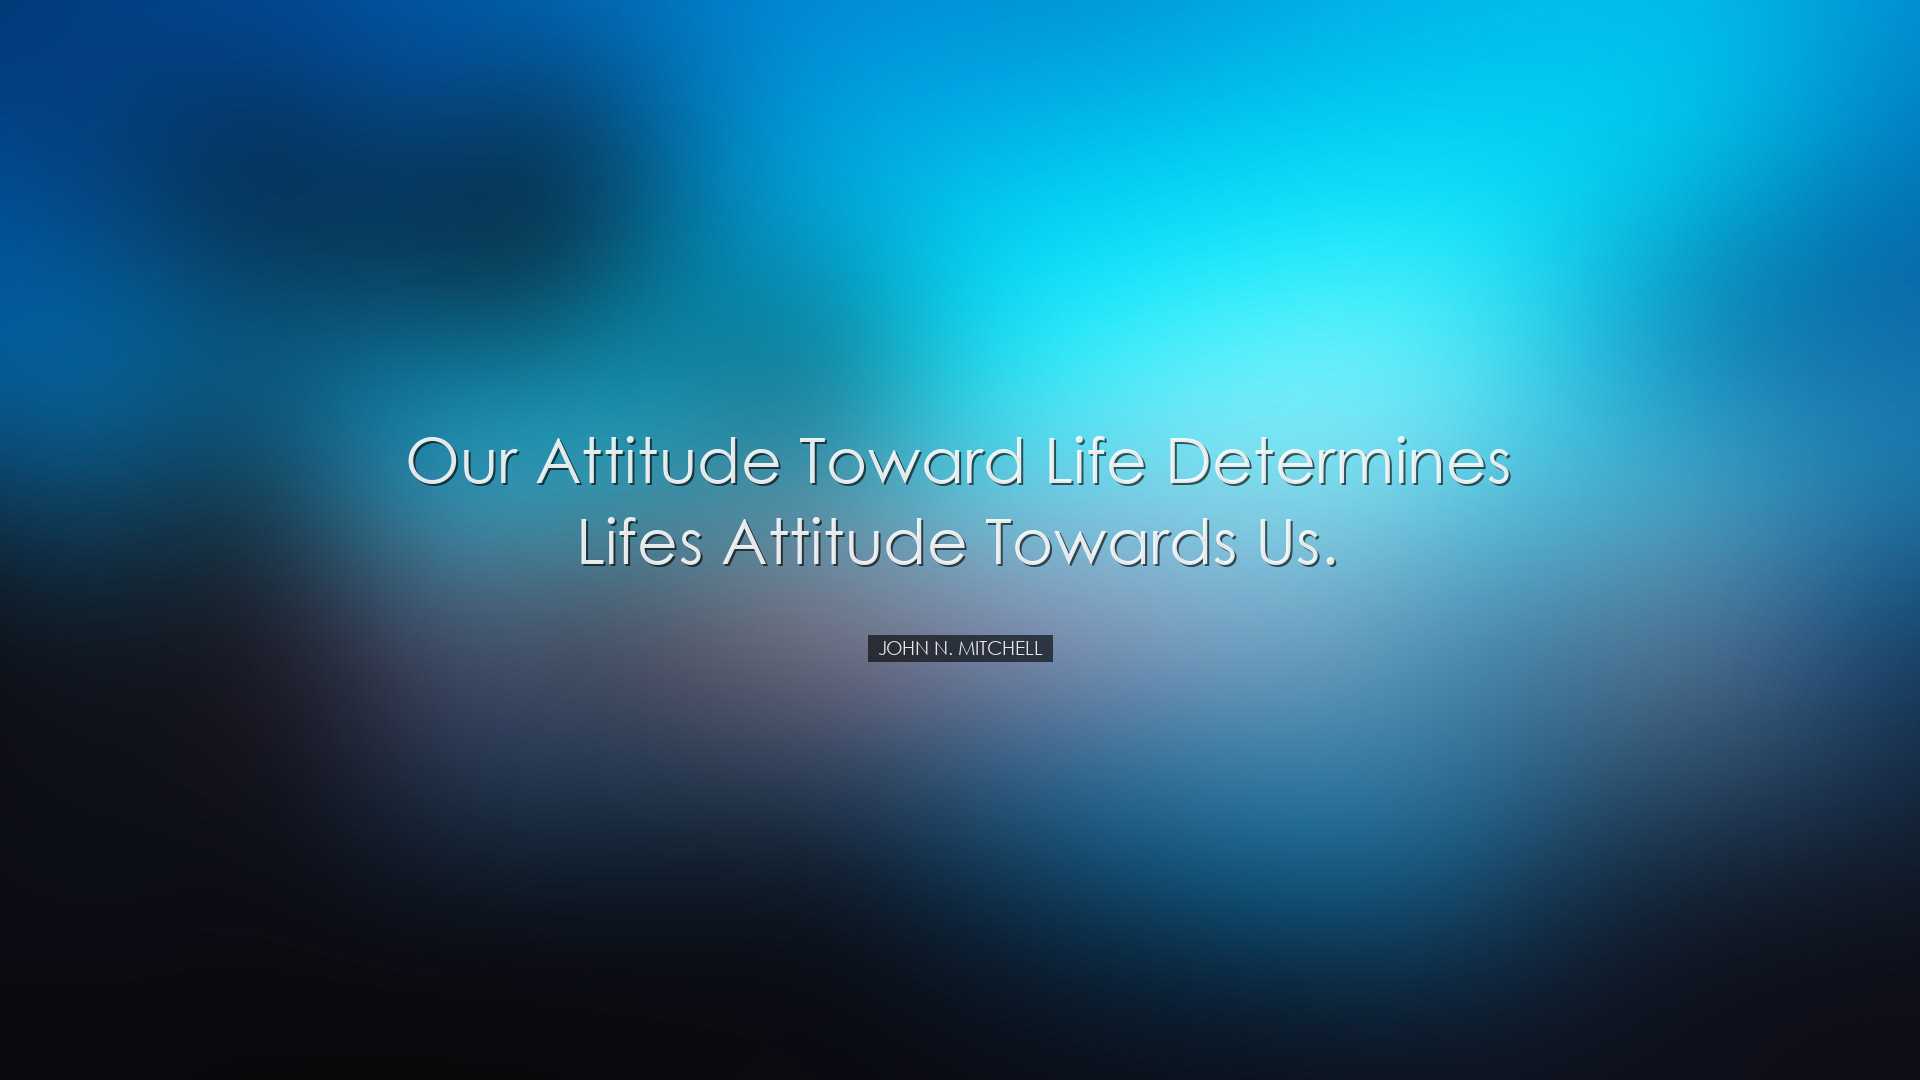 Our attitude toward life determines lifes attitude towards us. - J